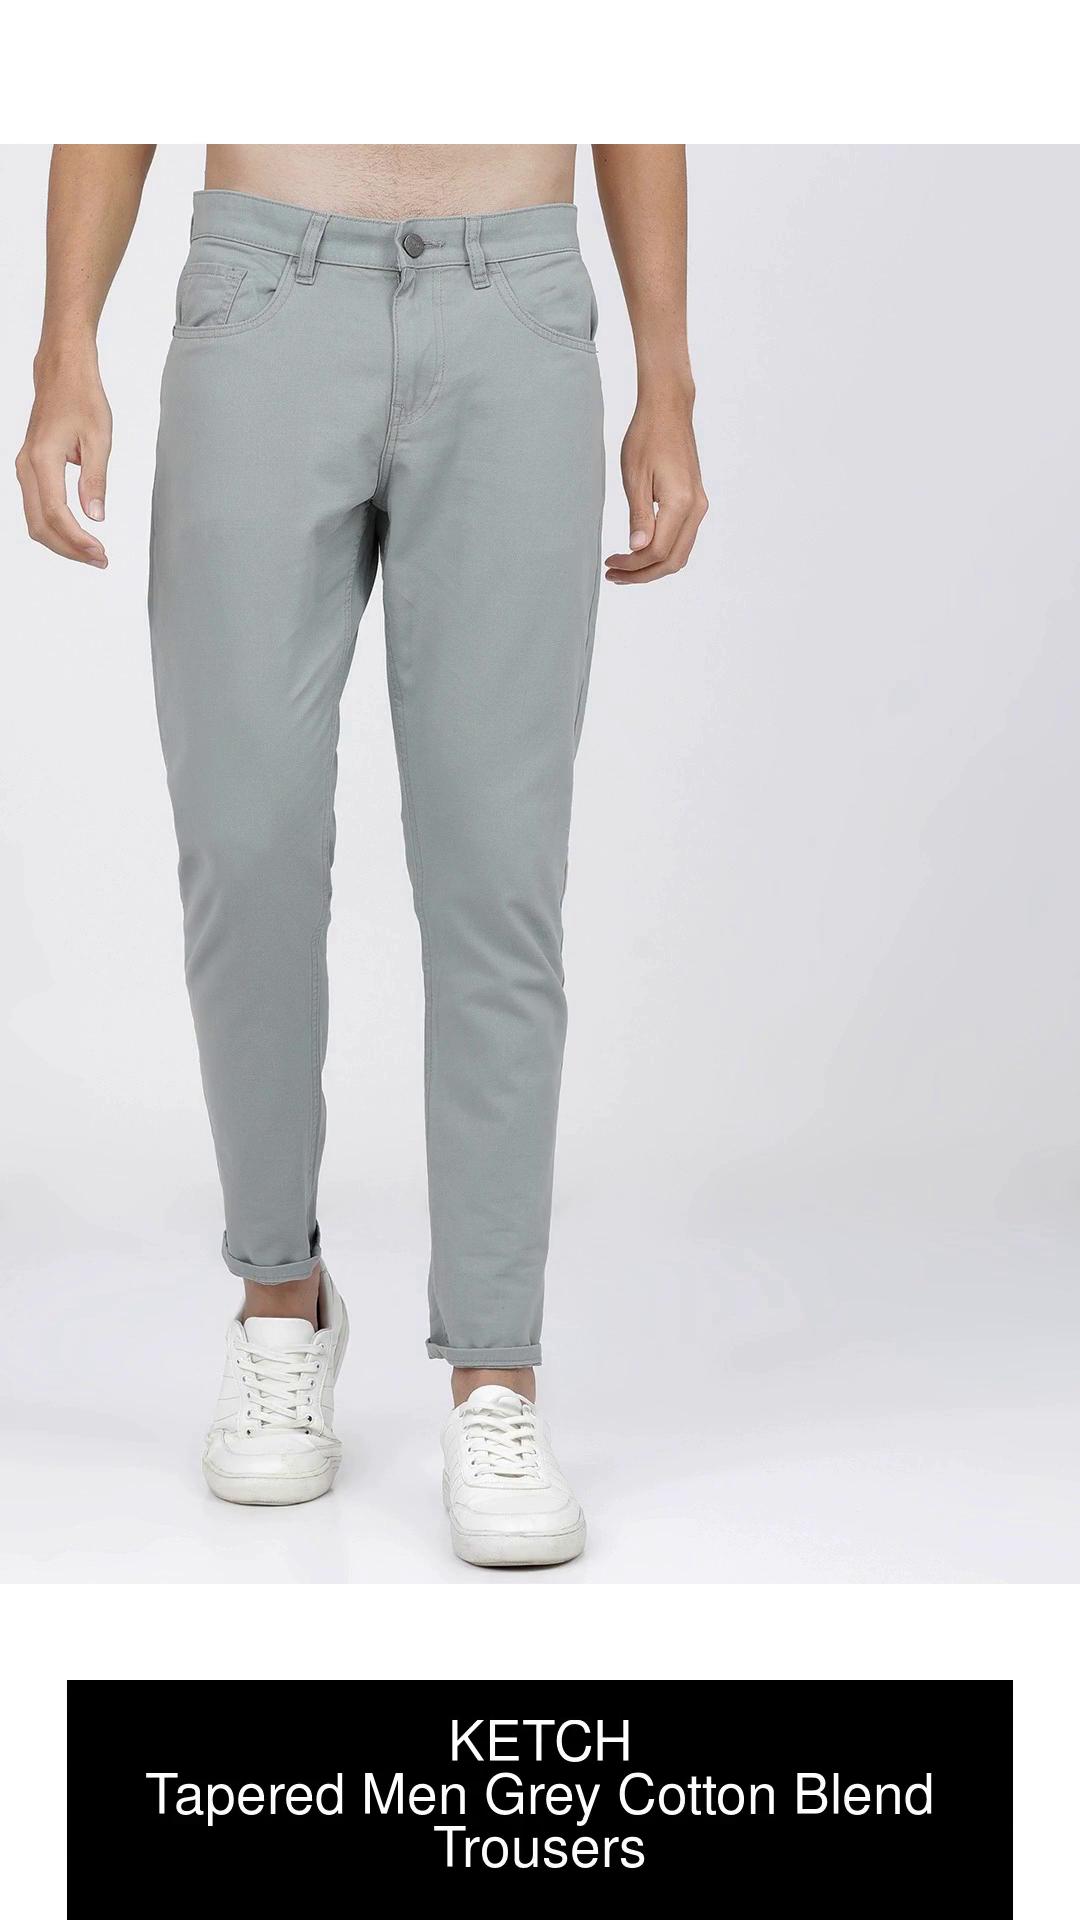 Buy Grey Trousers  Pants for Men by PROLINE Online  Ajiocom